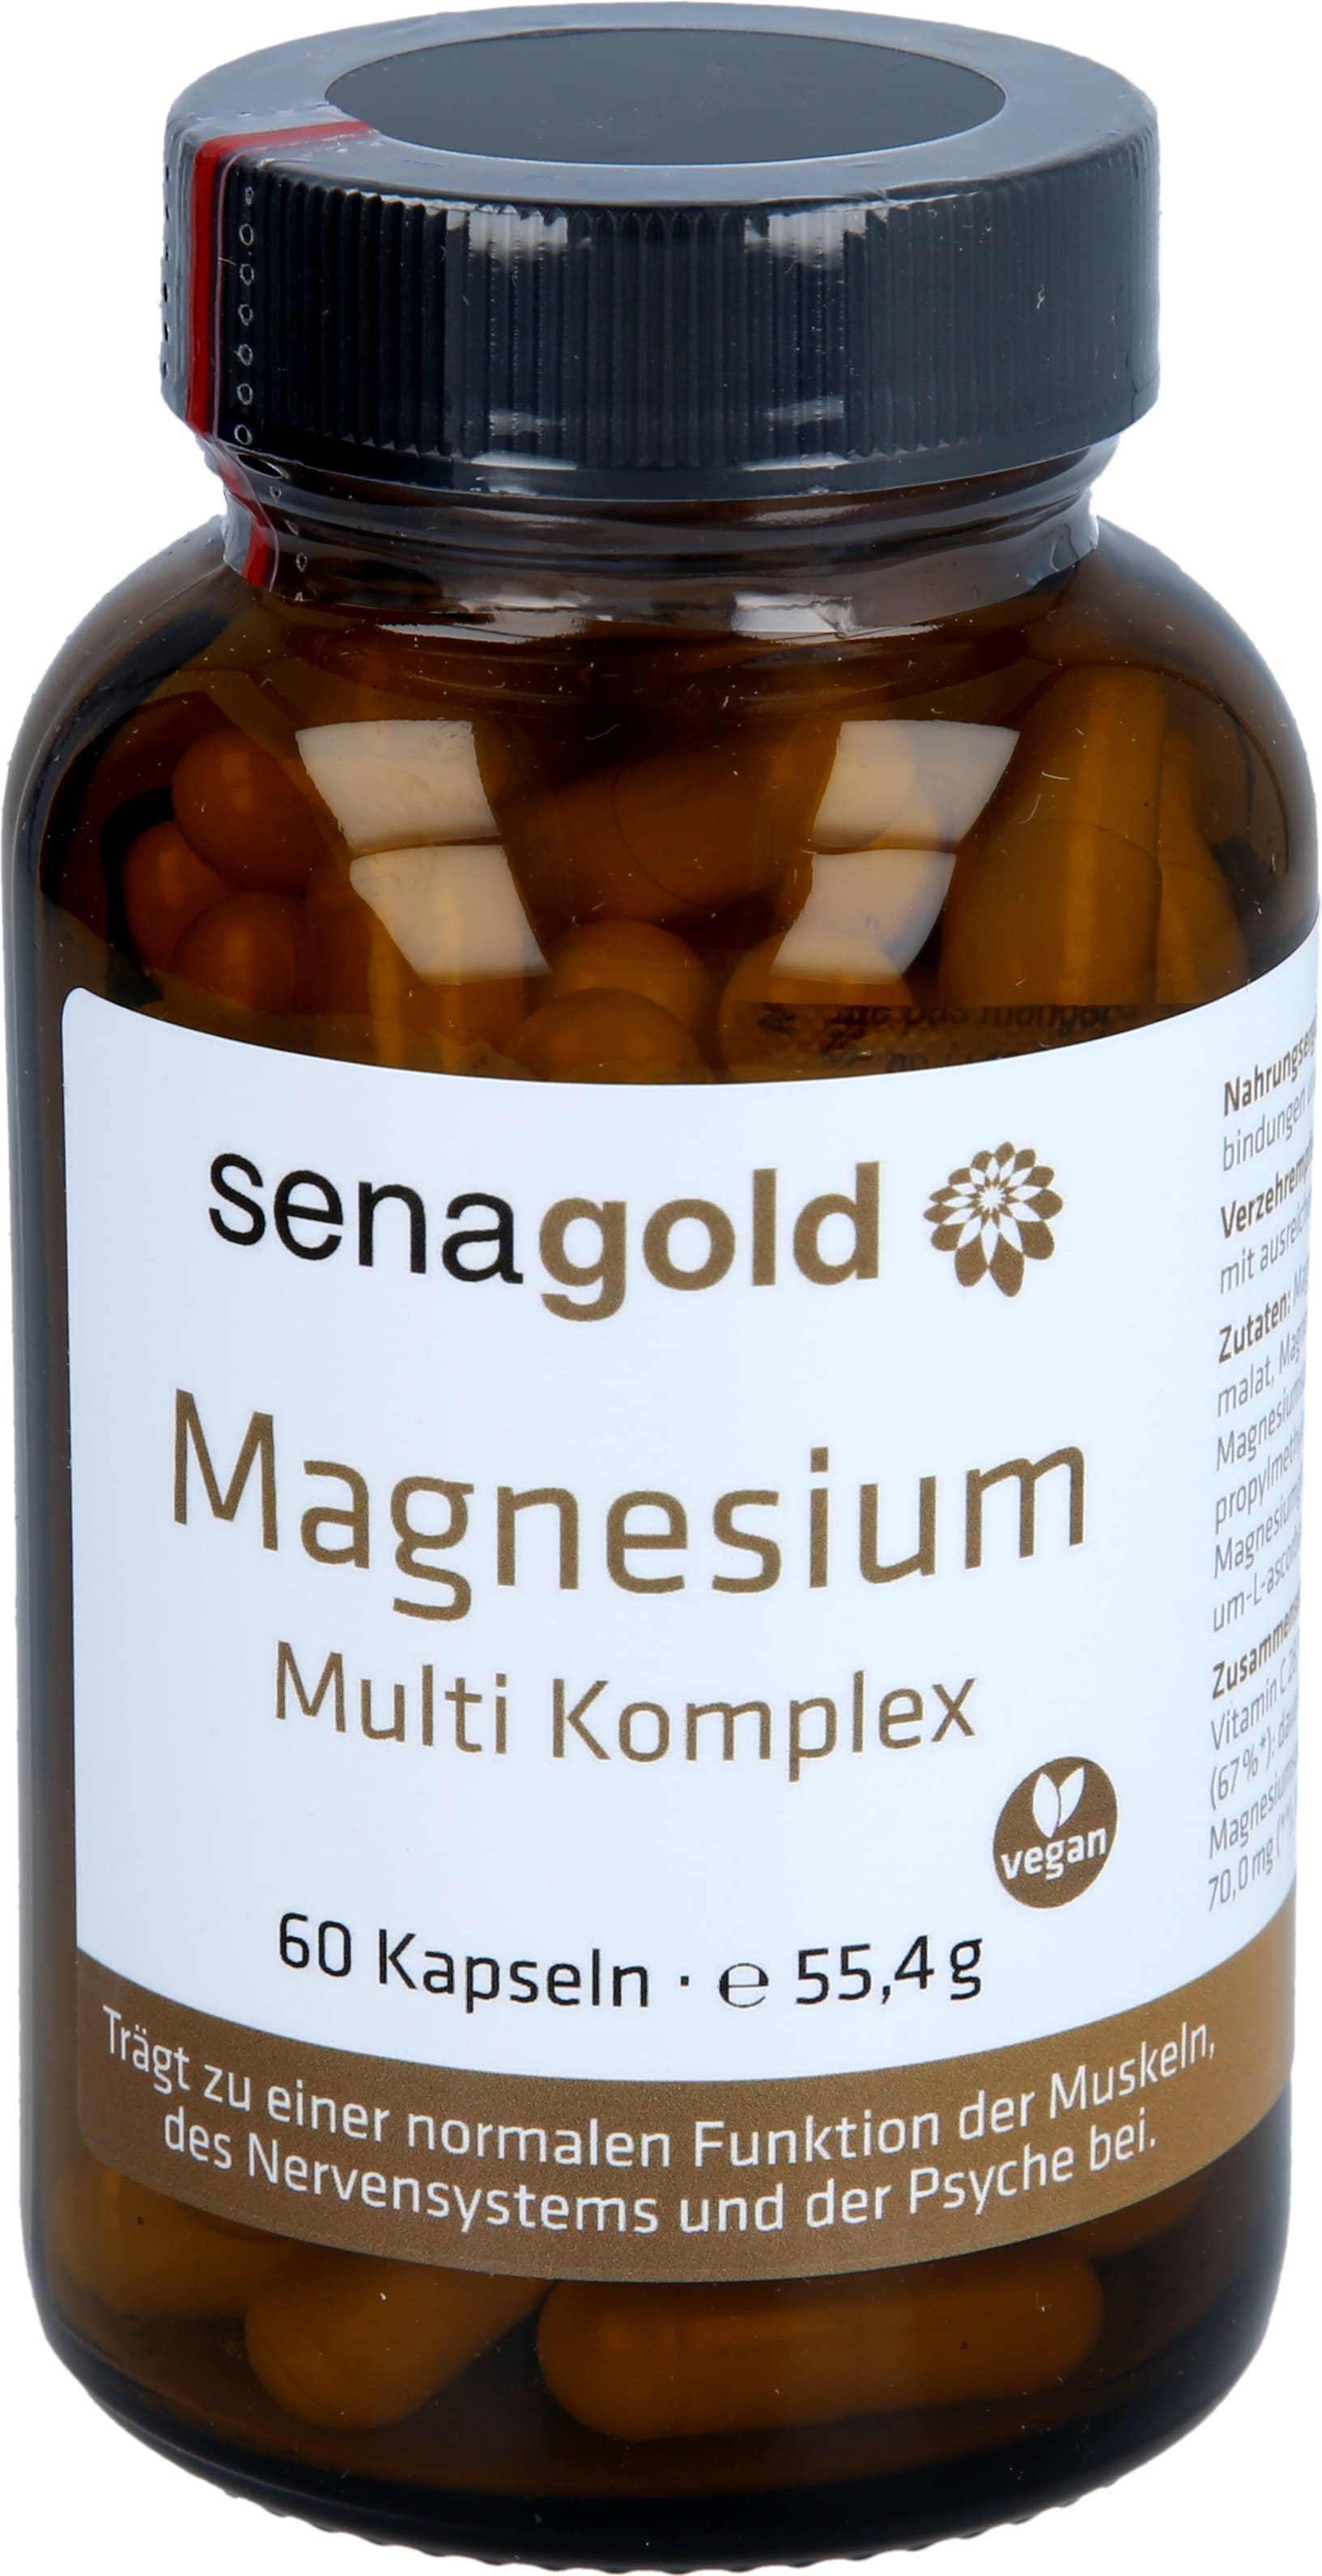 Magnesium Multi Komplex Kapseln